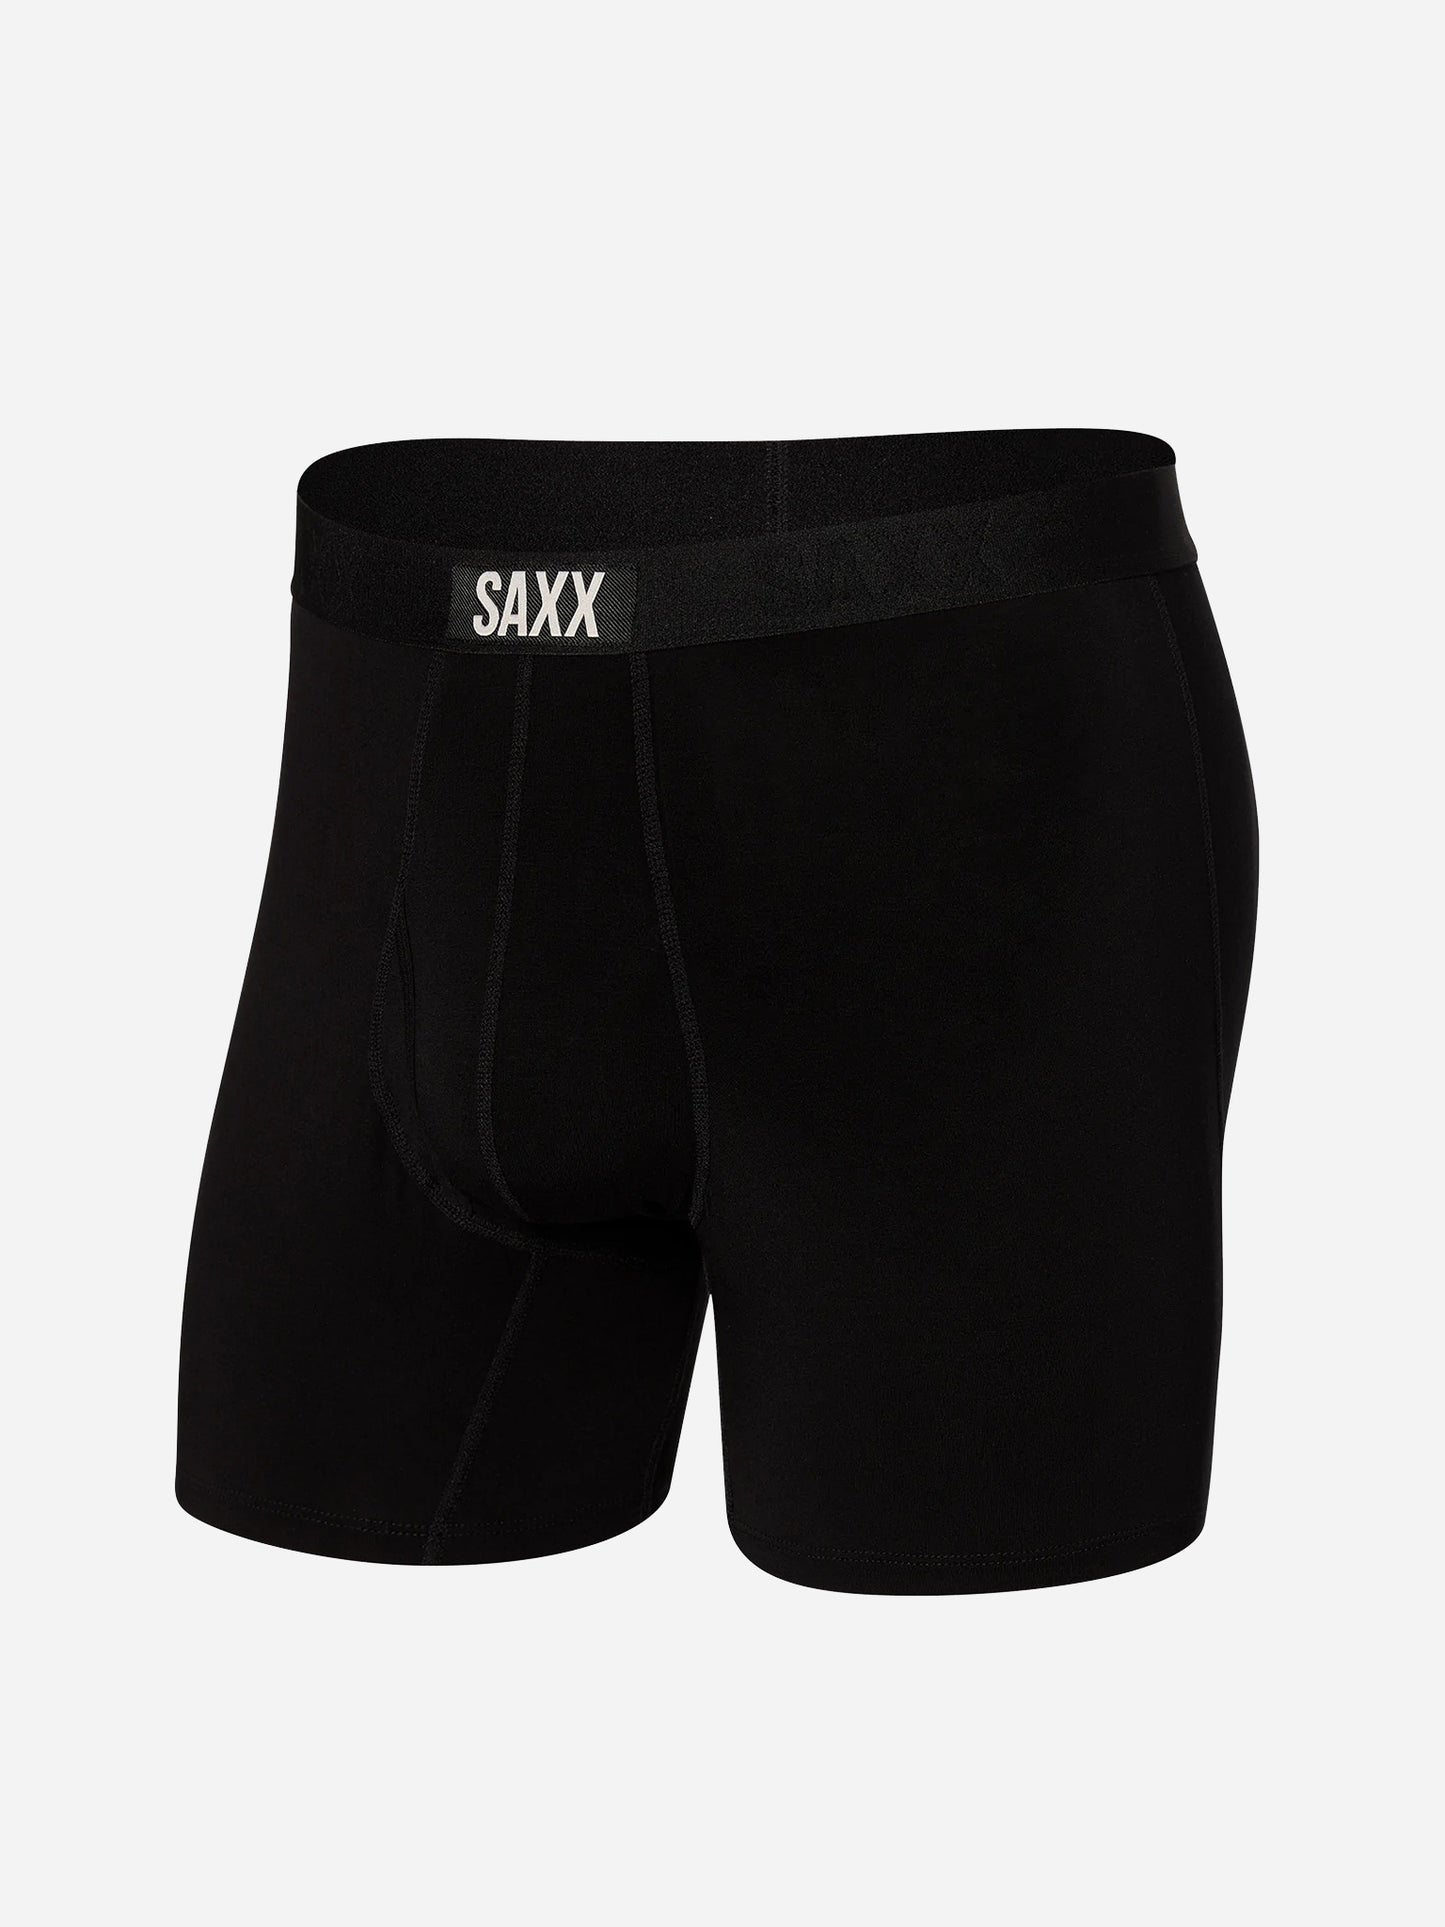 SAXX Underwear Men's Ultra Boxer Brief